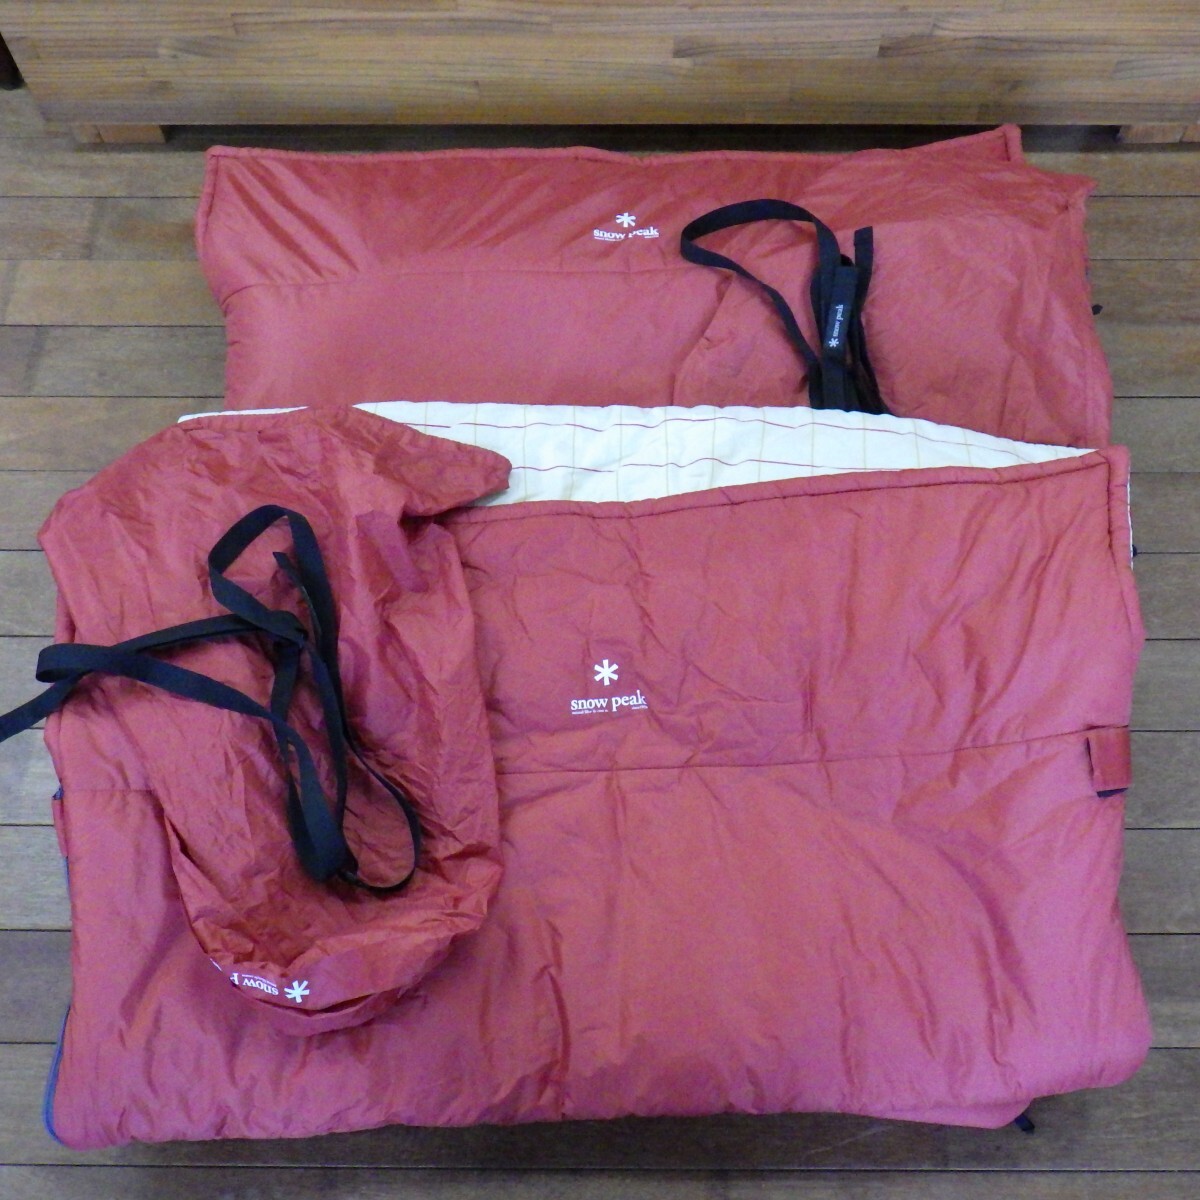  Snow Peak раздельный спальный мешок off тонн широкий LX BD-104 2 позиций комплект / спальный мешок постельные принадлежности /snow peak/ кемпинг товары для улицы 16